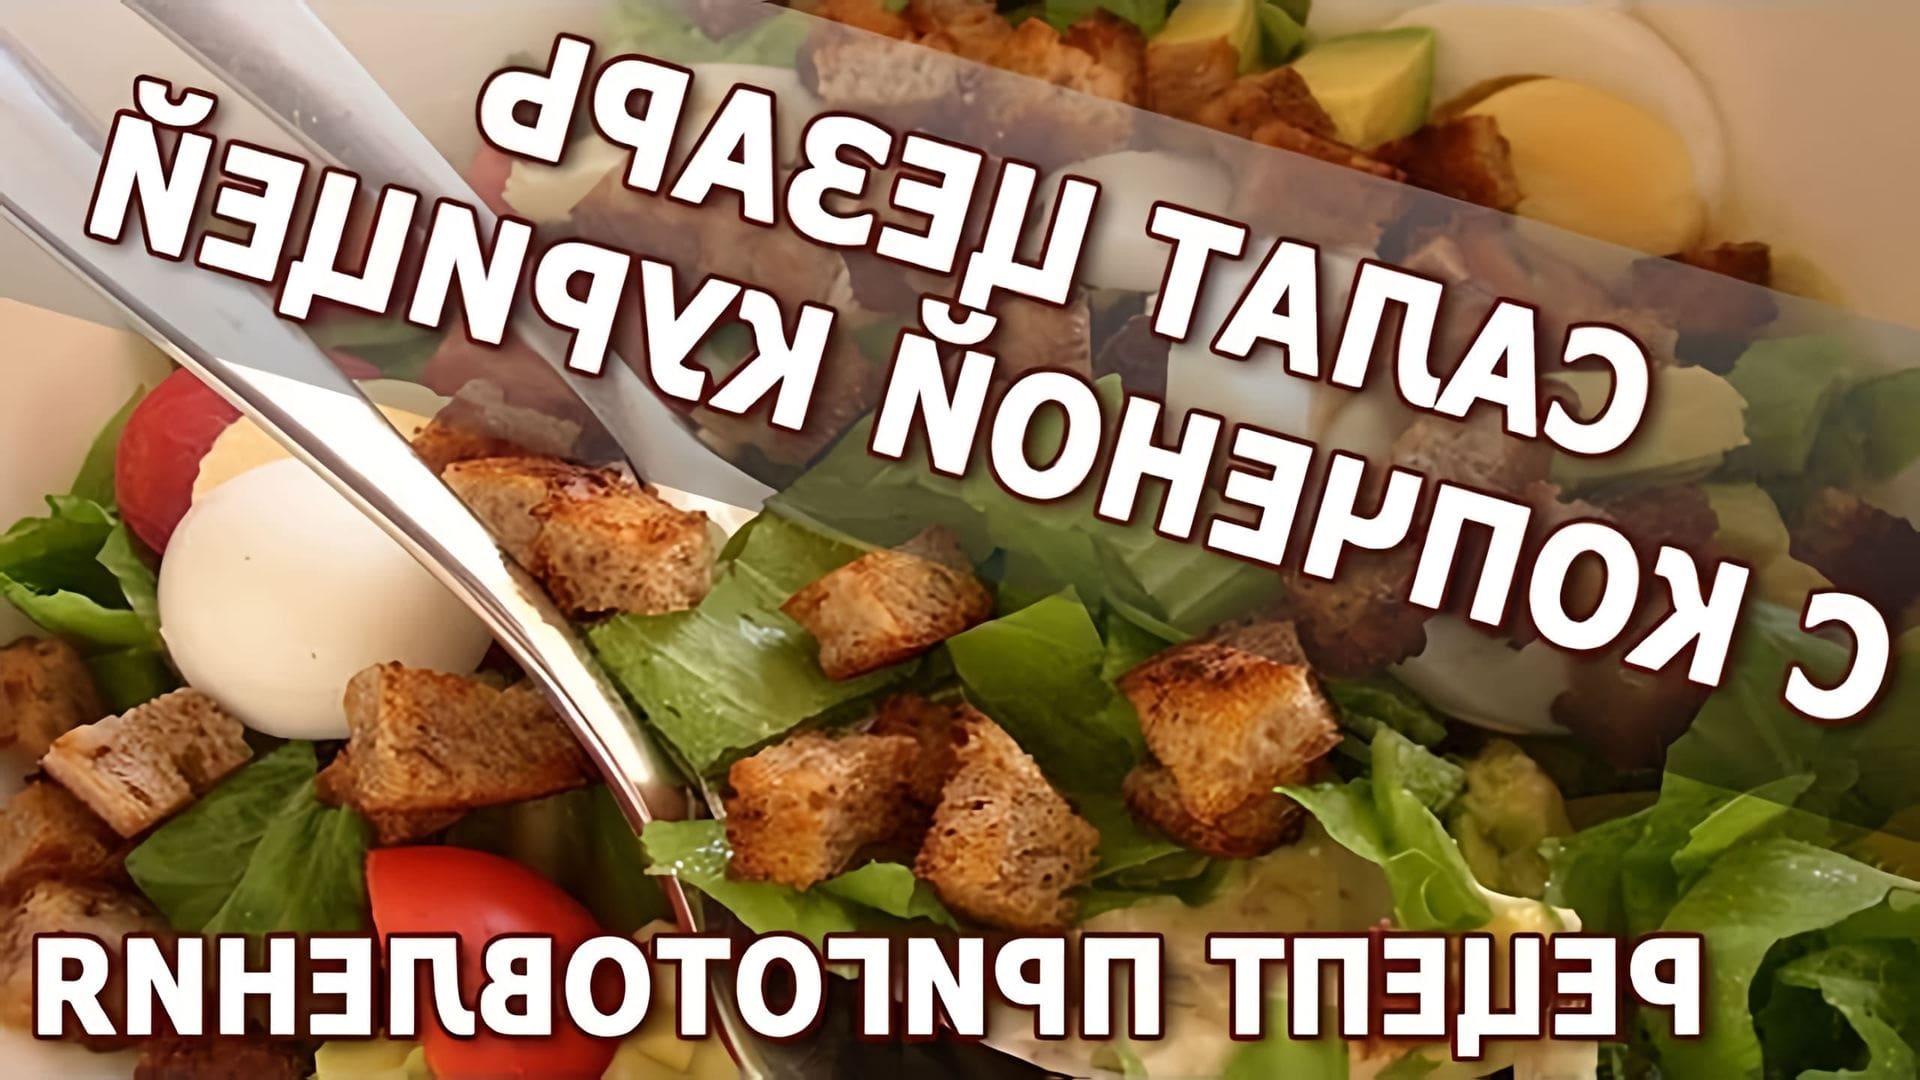 В данном видео демонстрируется рецепт приготовления салата Цезарь с копченой курицей